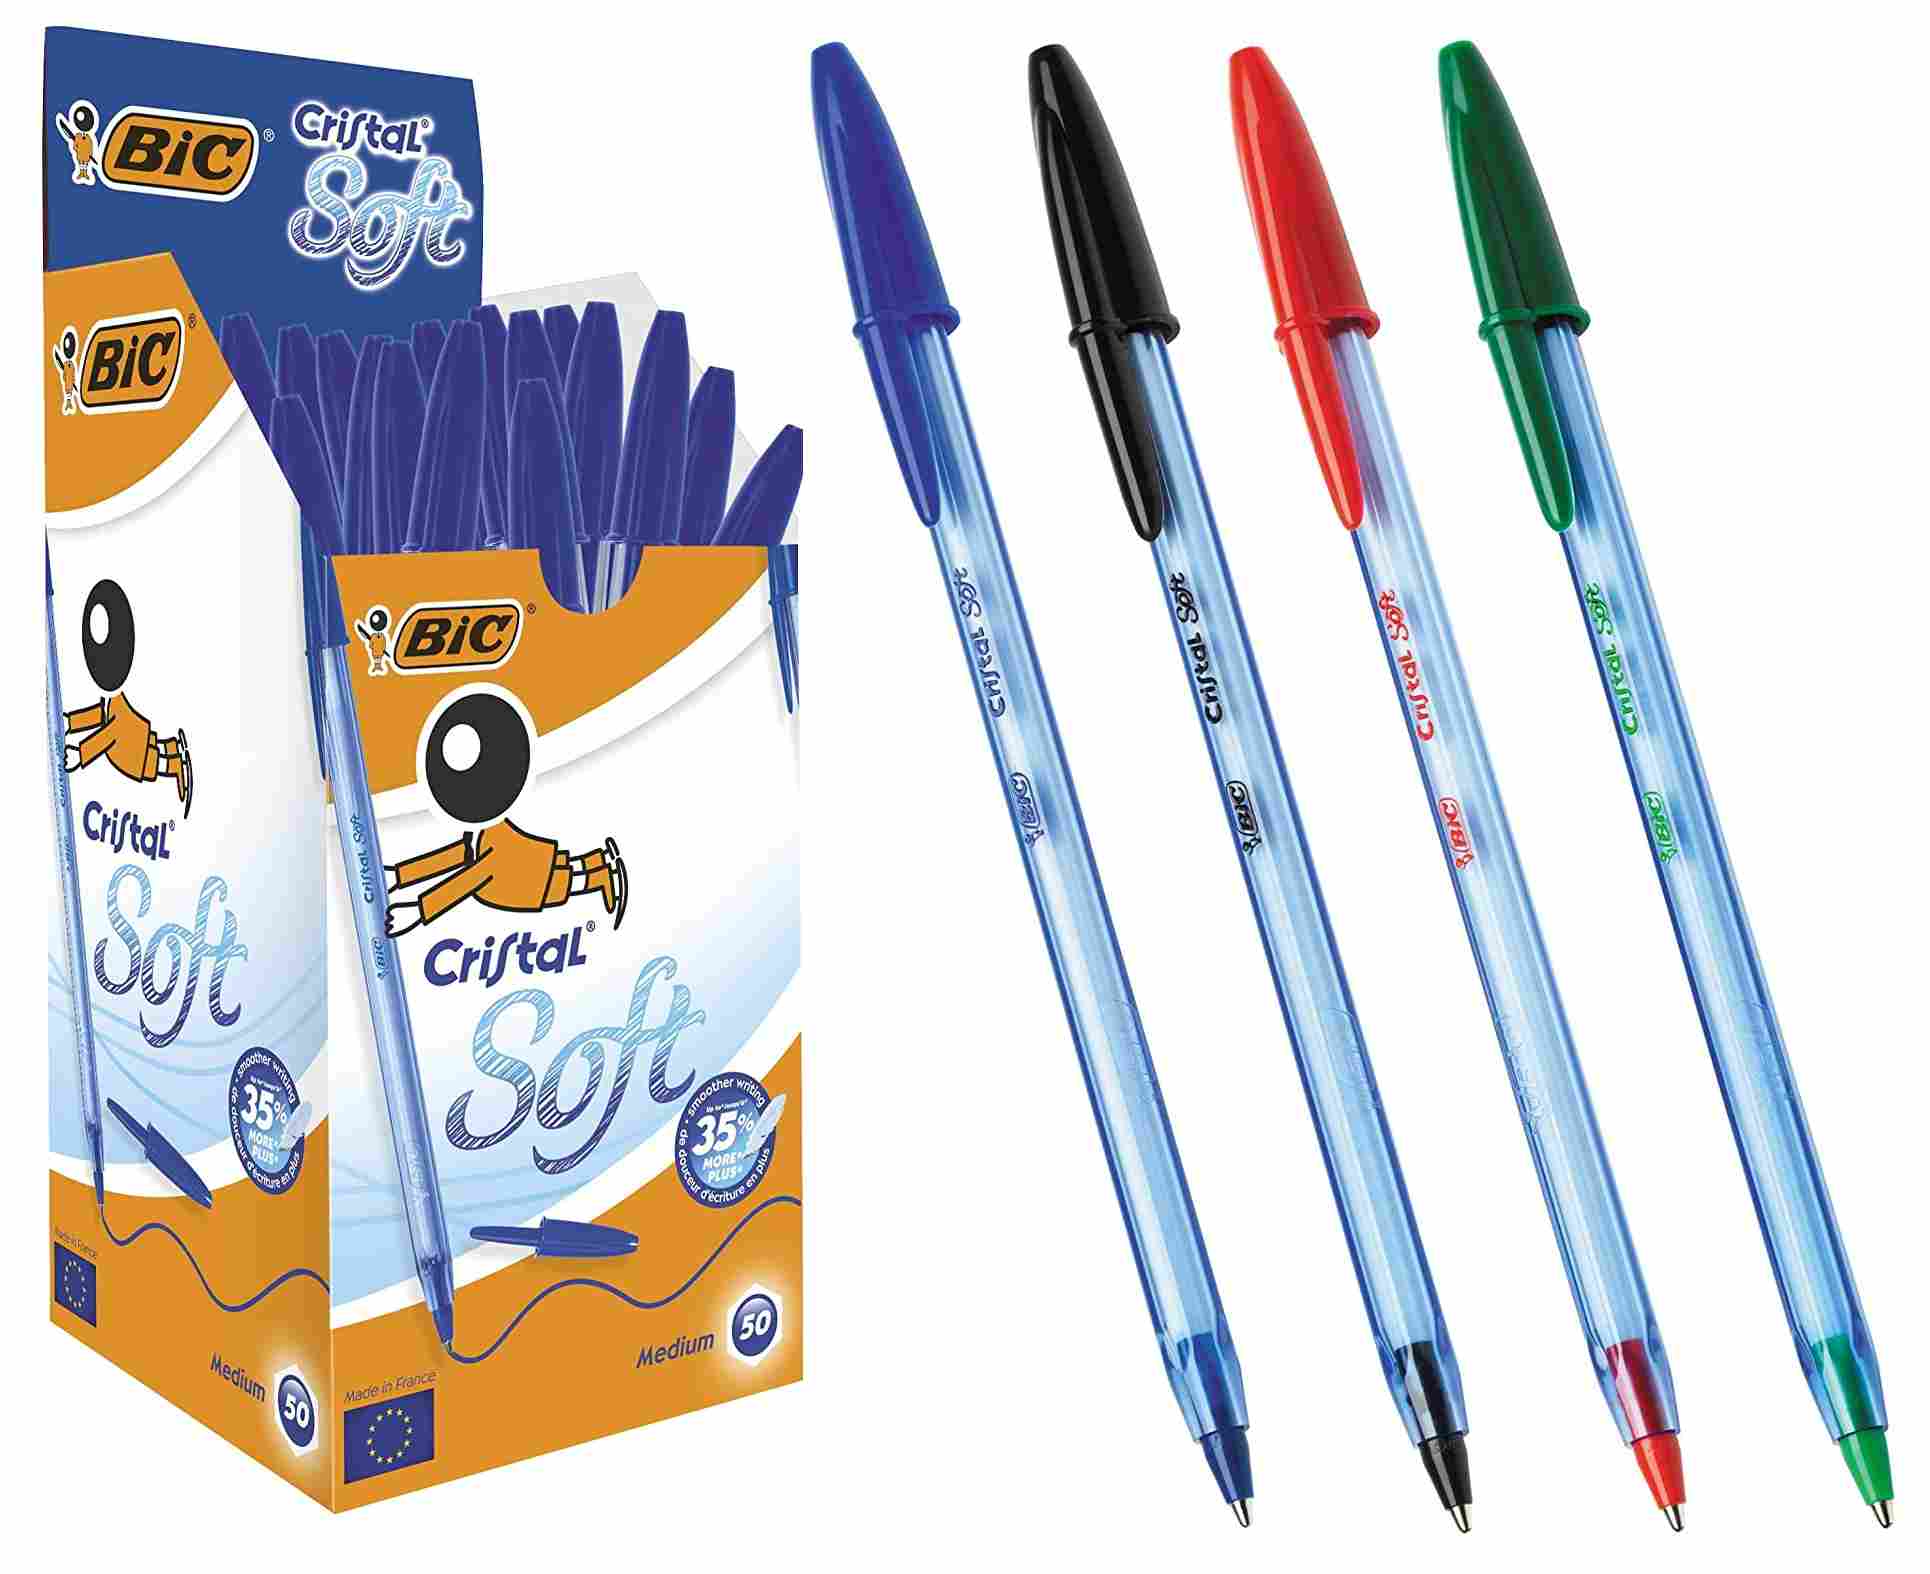 Bic Cristal Soft Caja 50 Bolígrafos Tinta de Aceite Azules